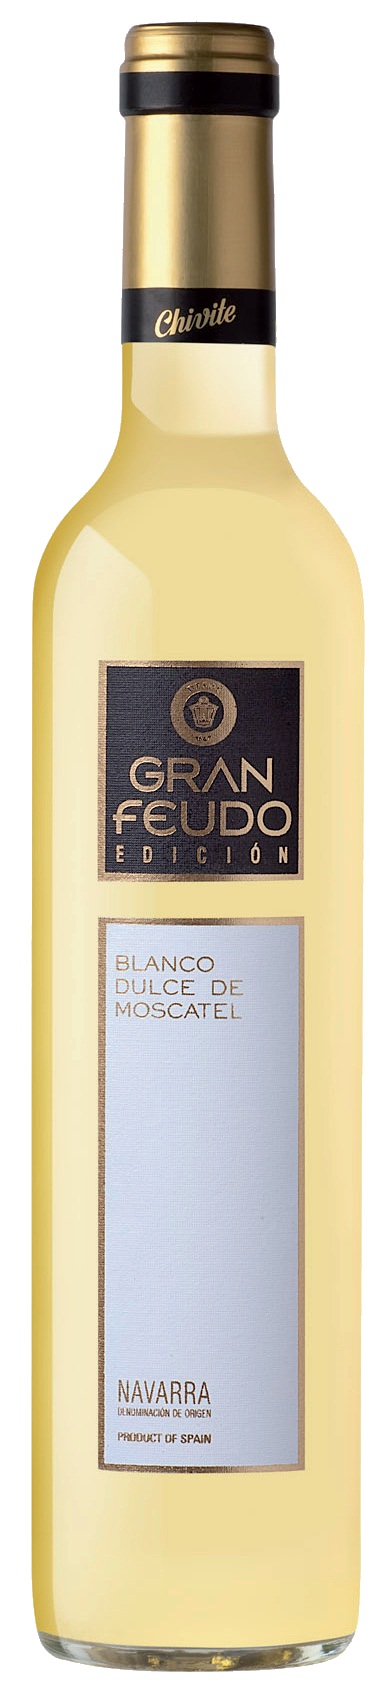 Logo del vino Gran Feudo Chivite Blanco de Moscatel